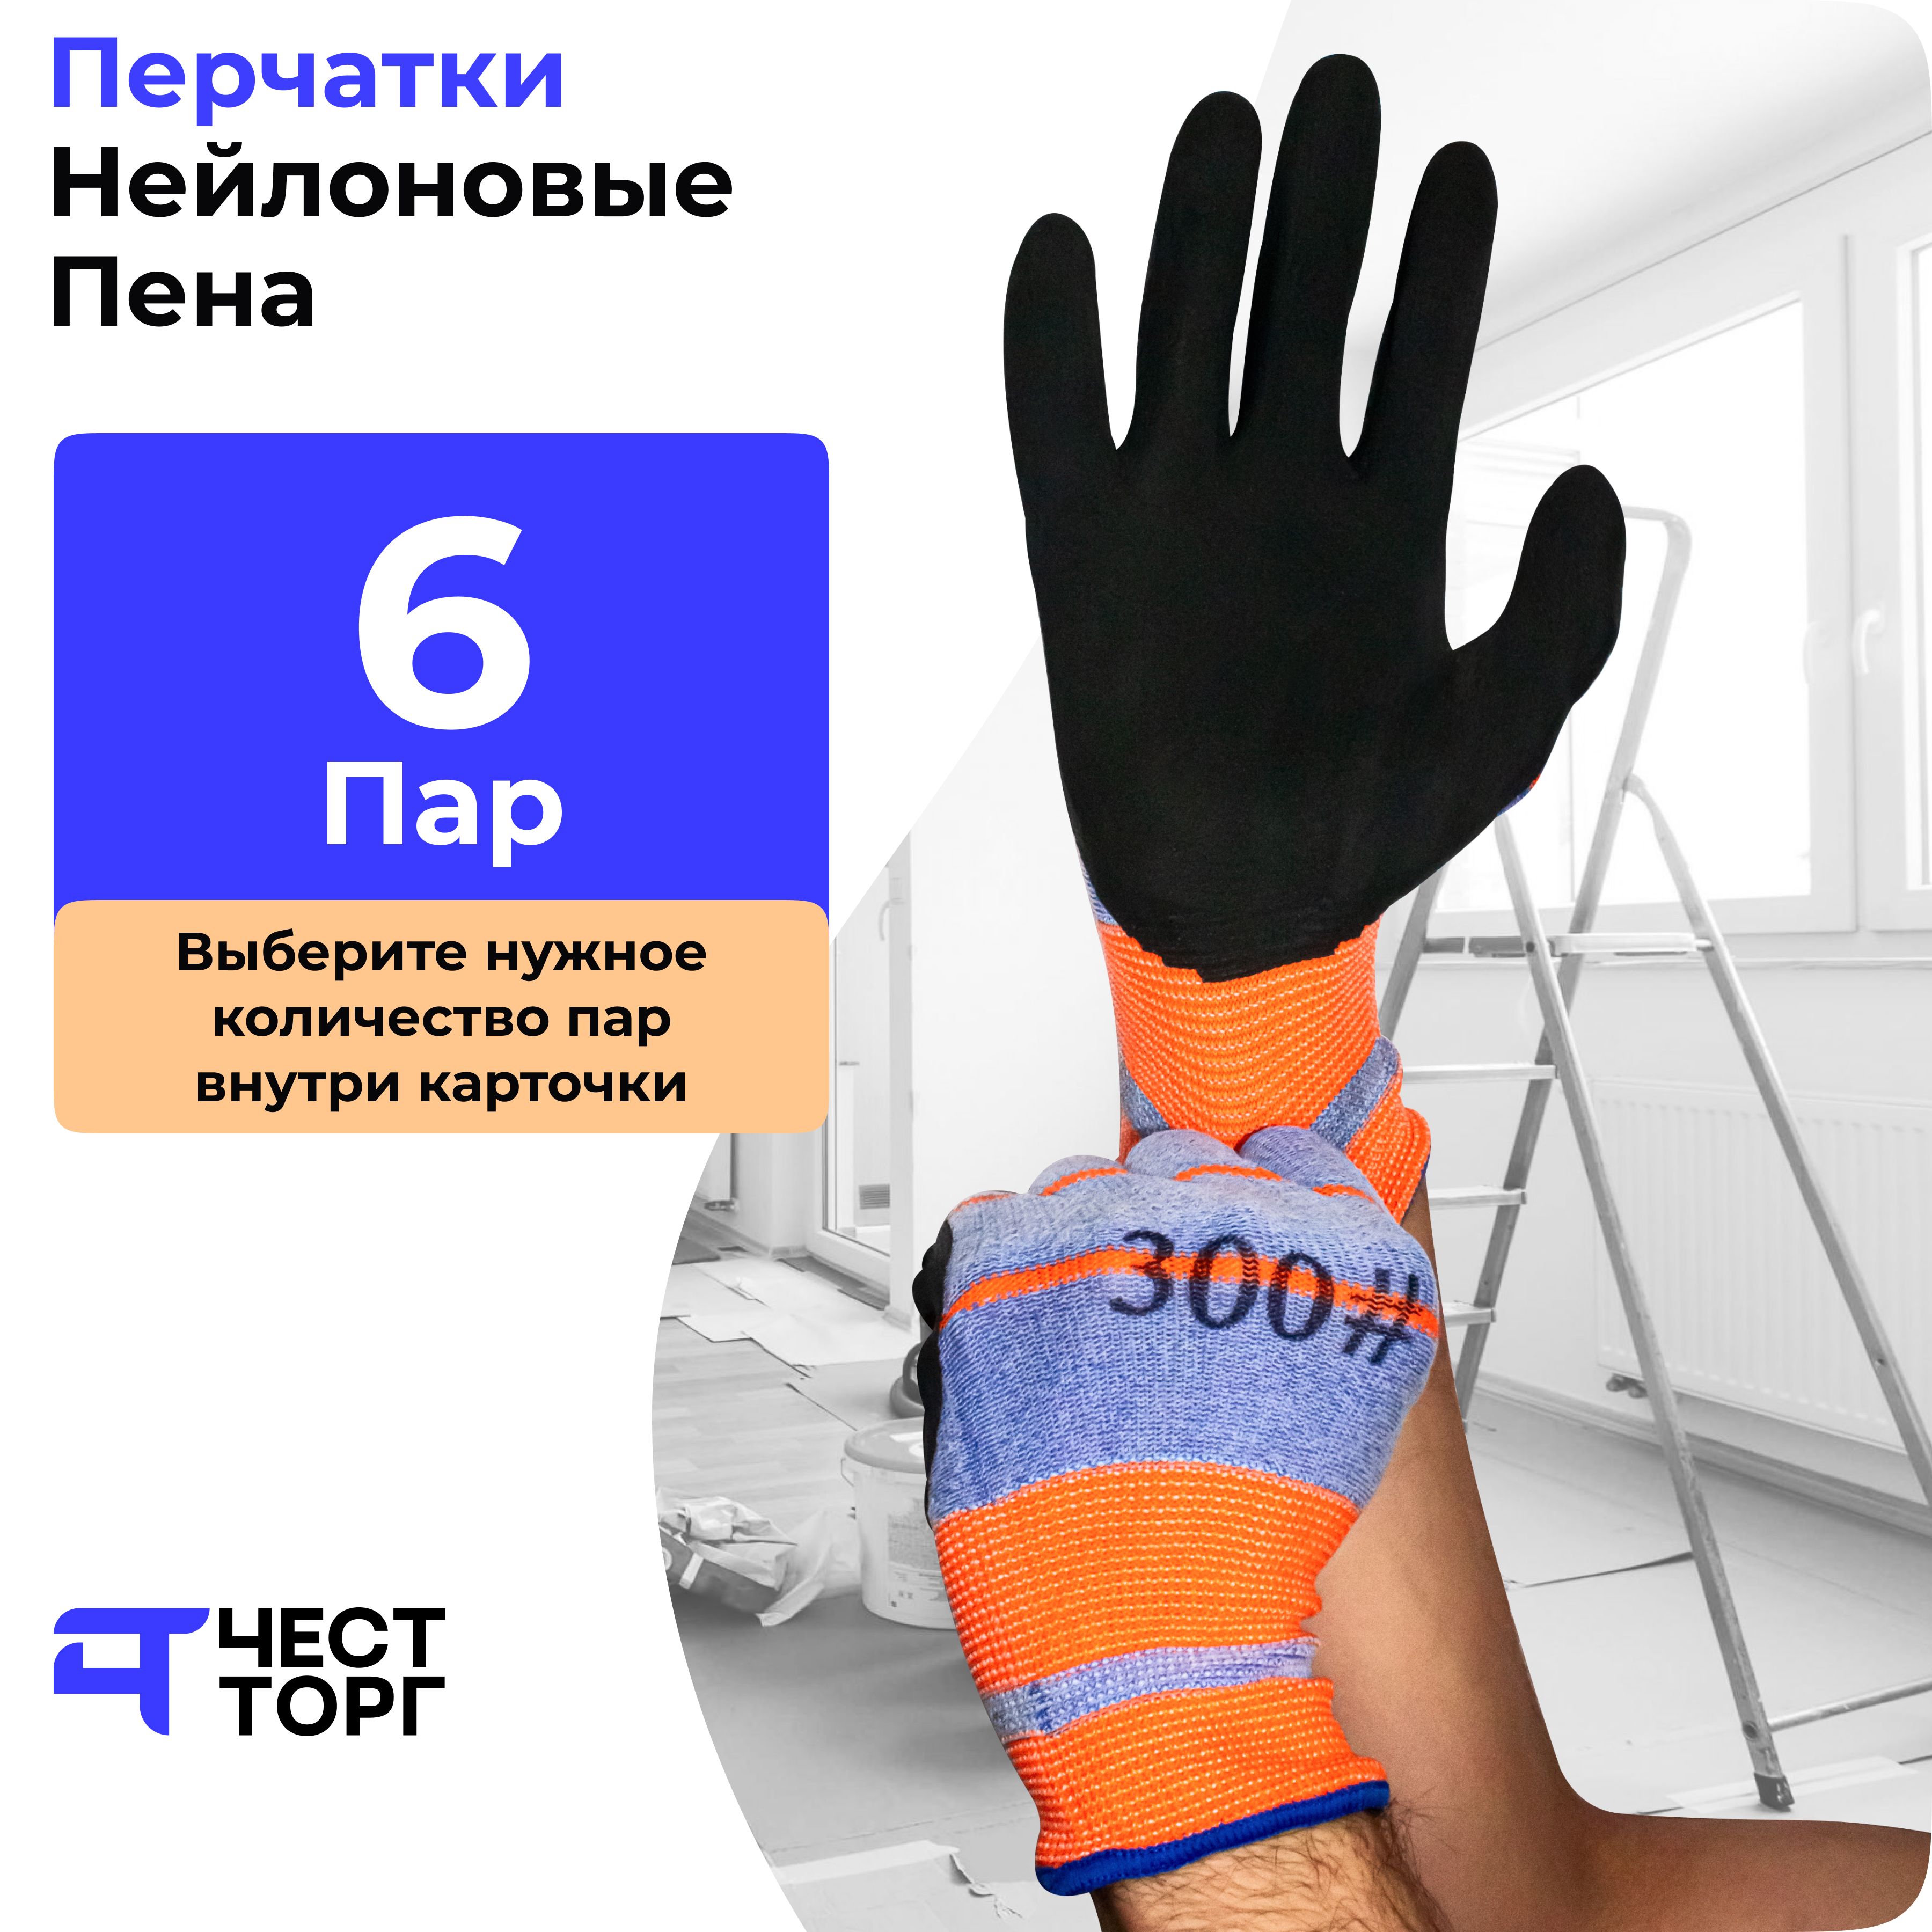 Перчатки Нейлоновые, Вспененный Латекс, 6 Пар, Размер: 10 рабочие нейлоновые перчатки master pro®